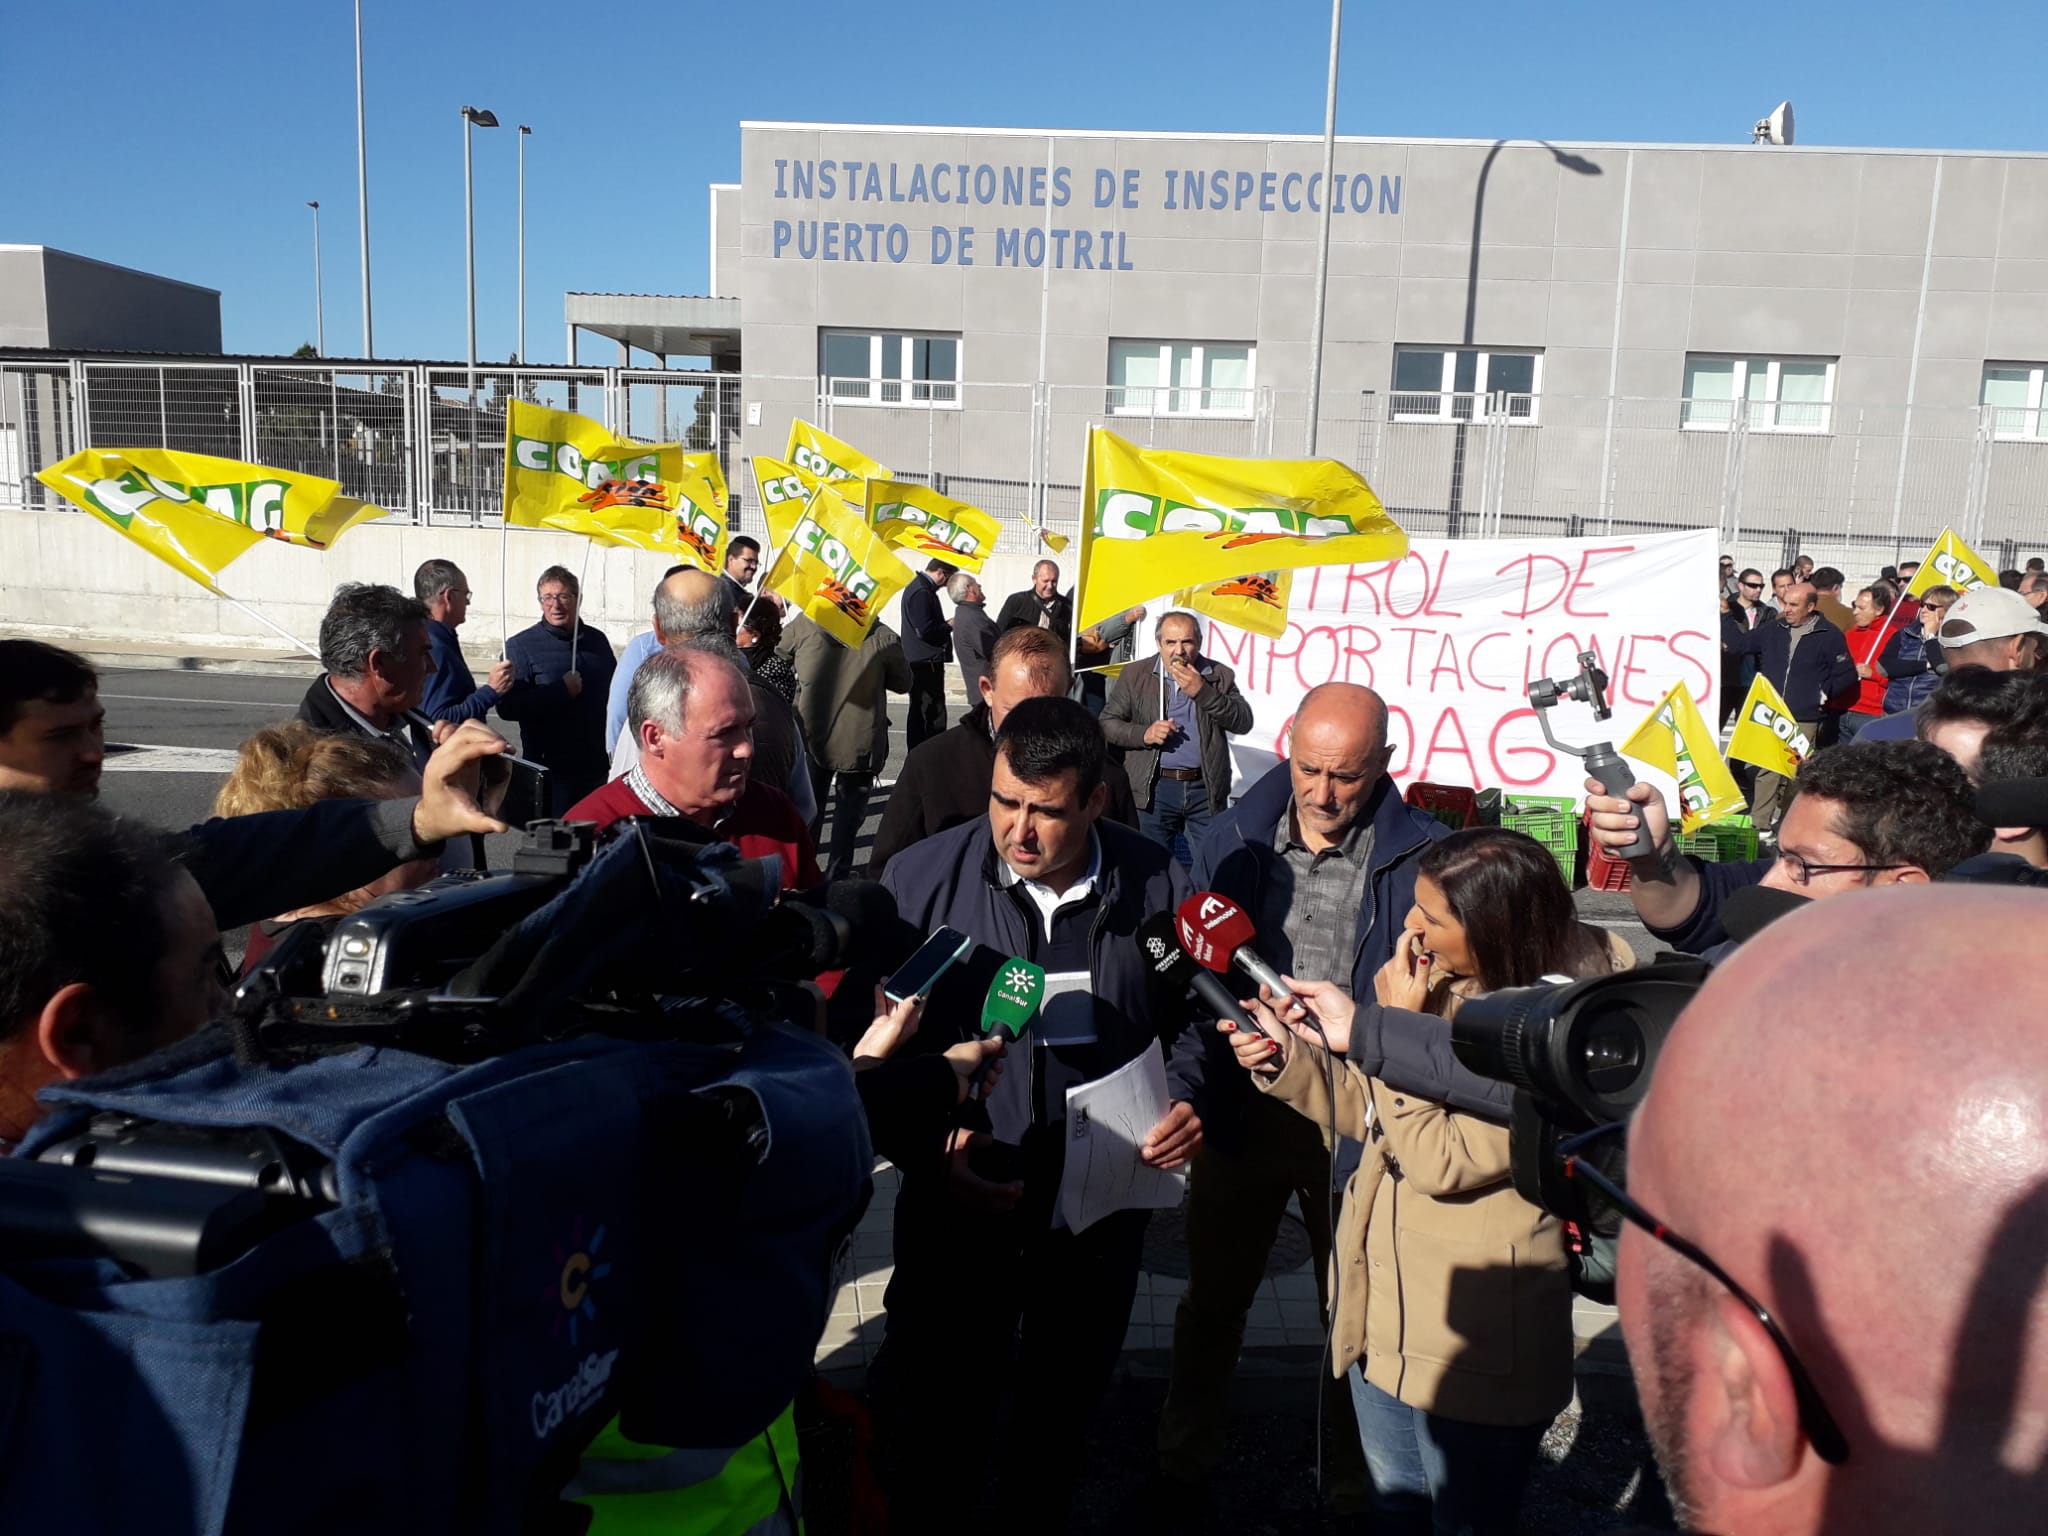 El campo deja la carretera para dirigirse a los puertos: Algeciras y Motril escenificarán nuevas protestas